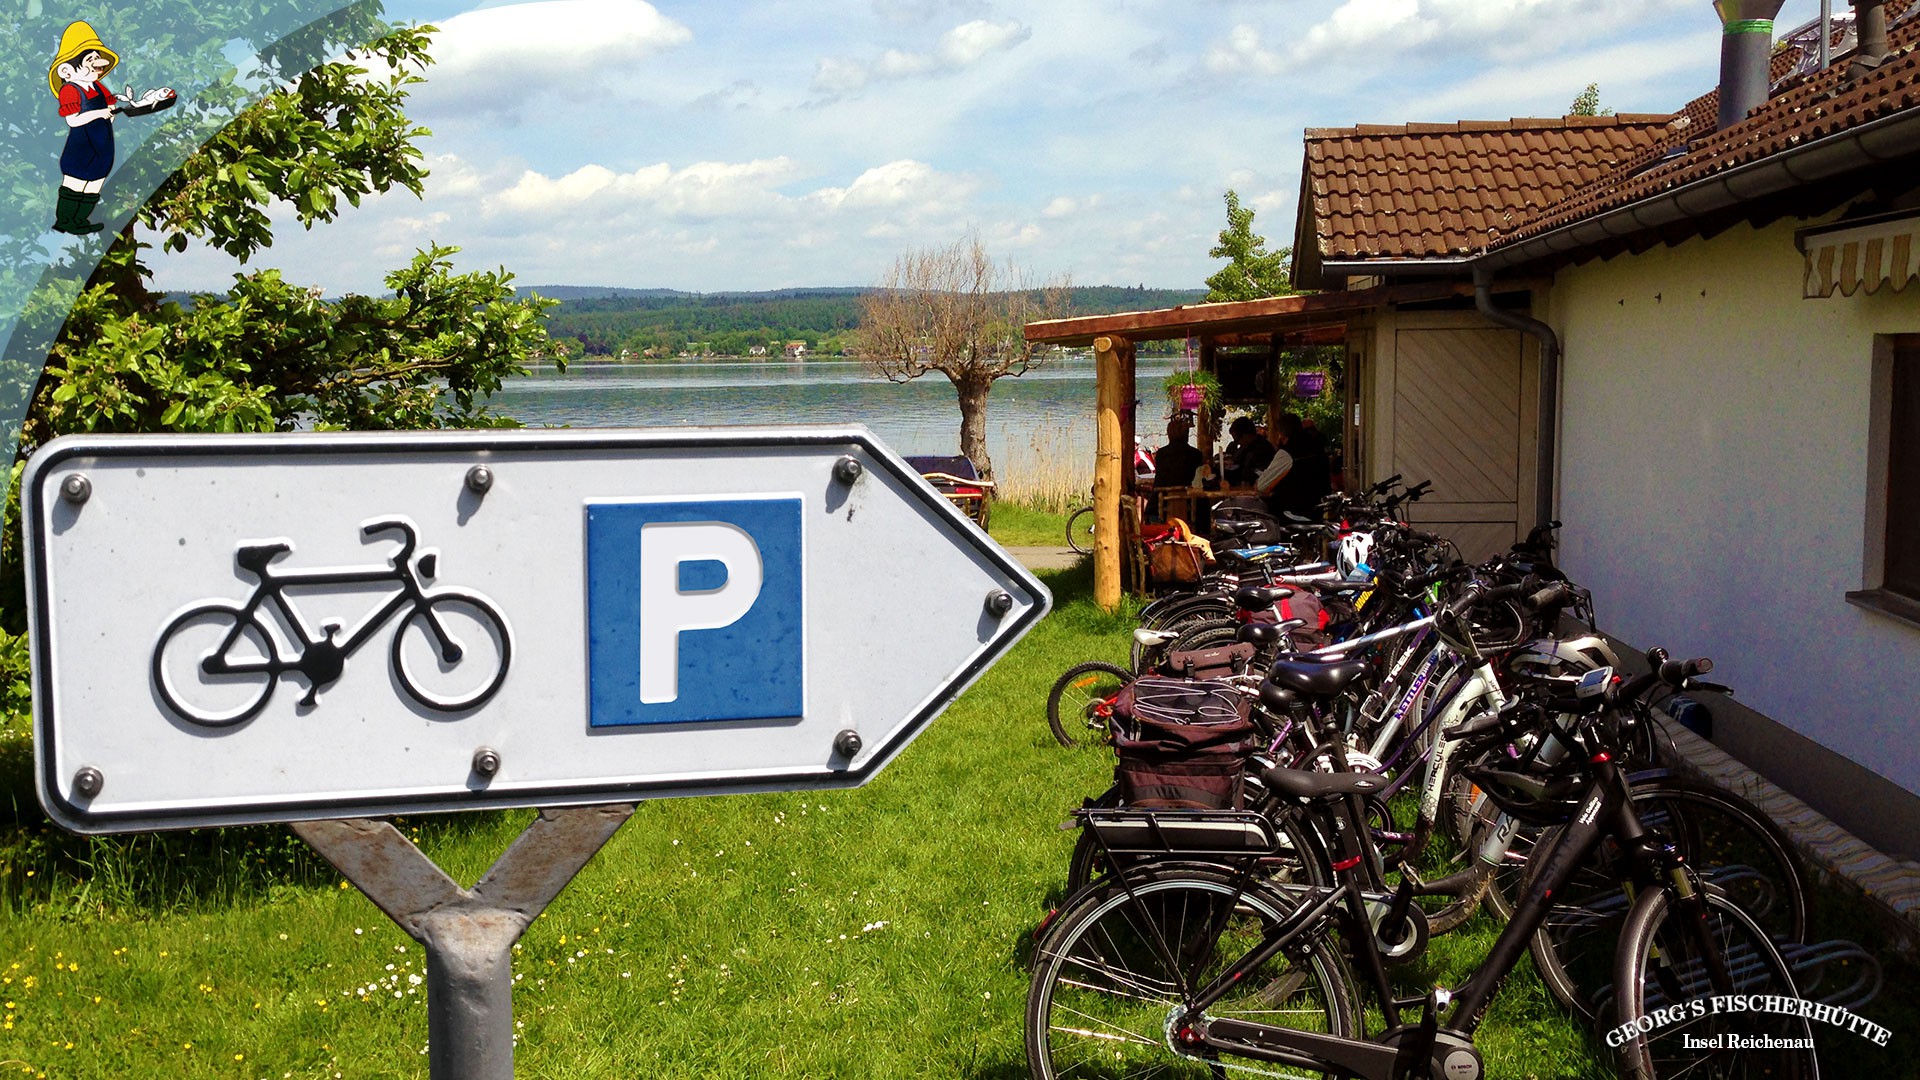 Georg's Fischerhütte, Konstanz-Reichenau - Fahrradfahrer herzlich willkommen!